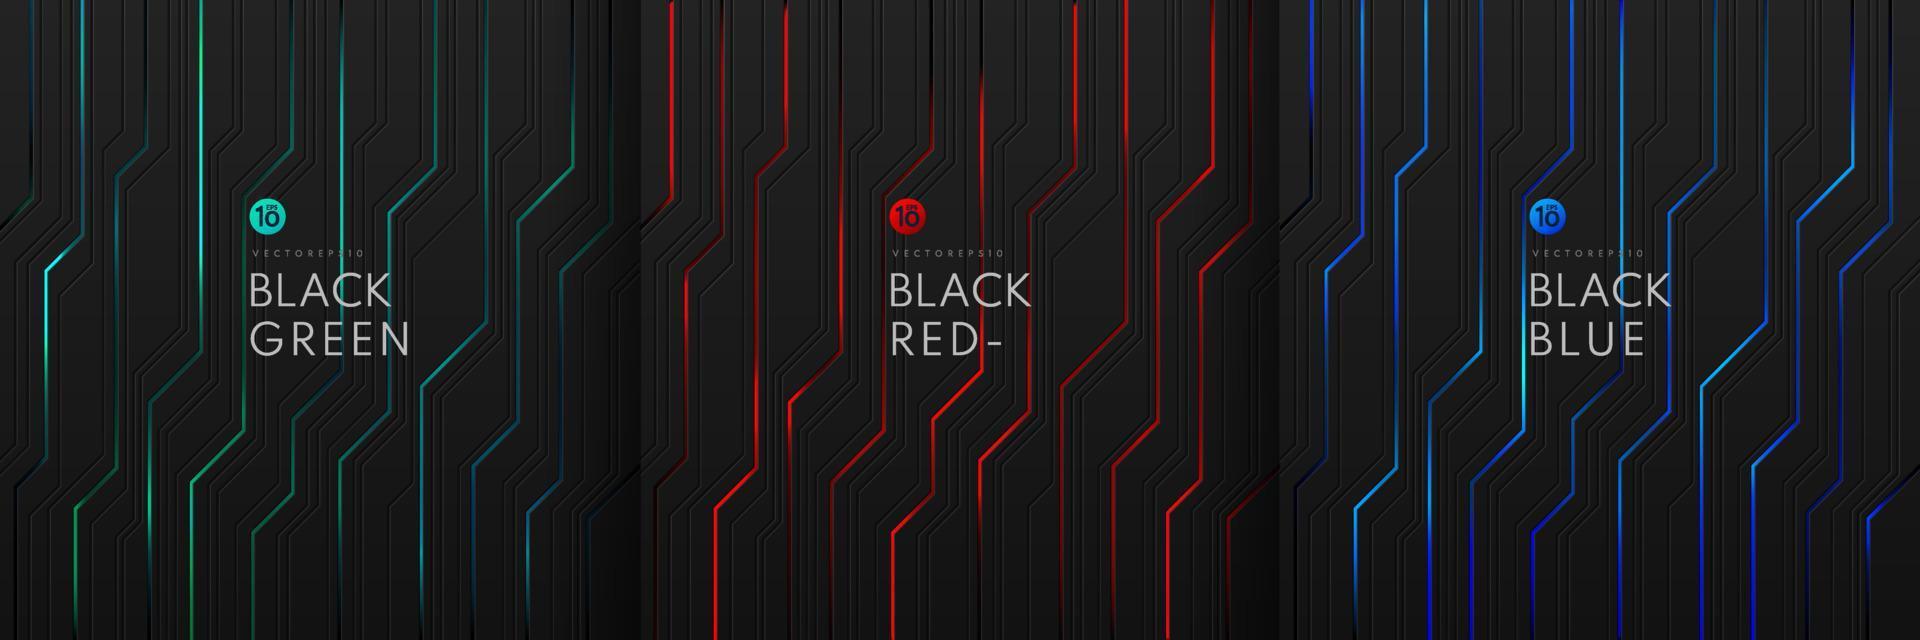 uppsättning av dynamiskt grönt, blått och rött ljus på svart metallisk cybergeometrisk design i kretsstil. modern teknik futuristisk mörk bakgrund. design för banner, omslag, webb, flygblad. vektor eps10